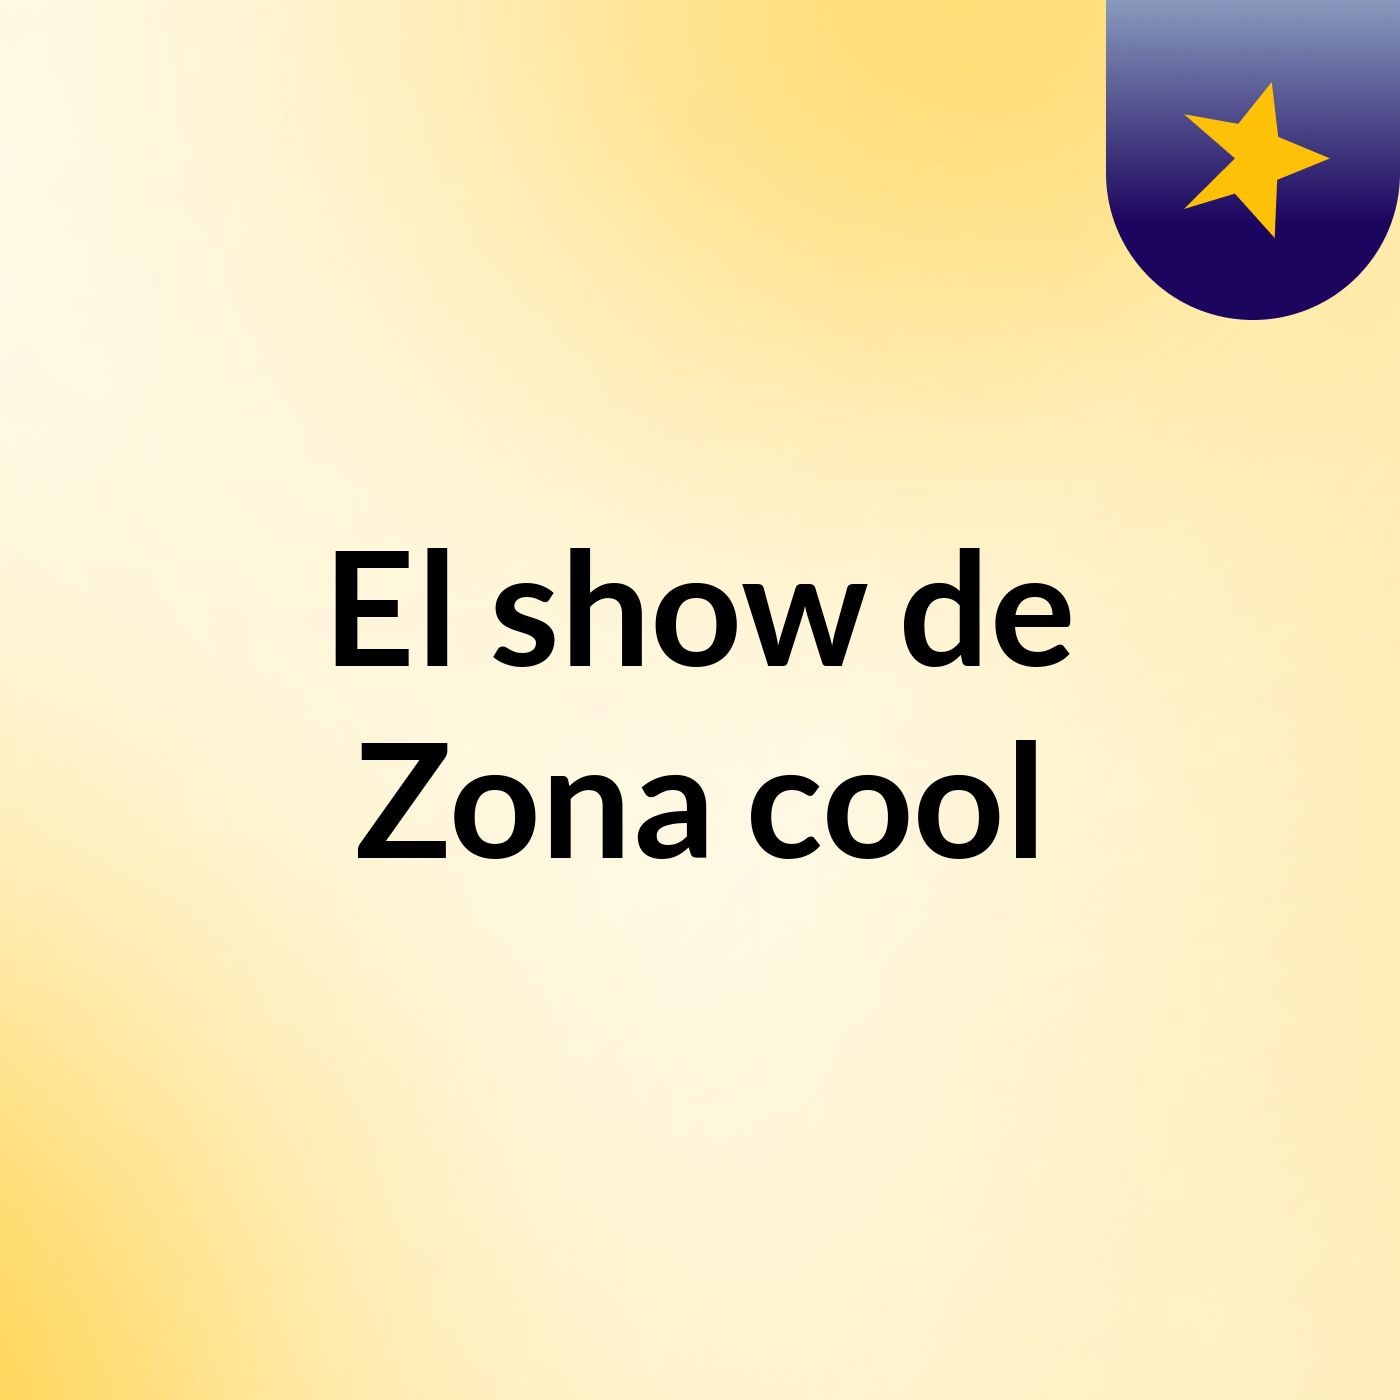 El show de Zona cool